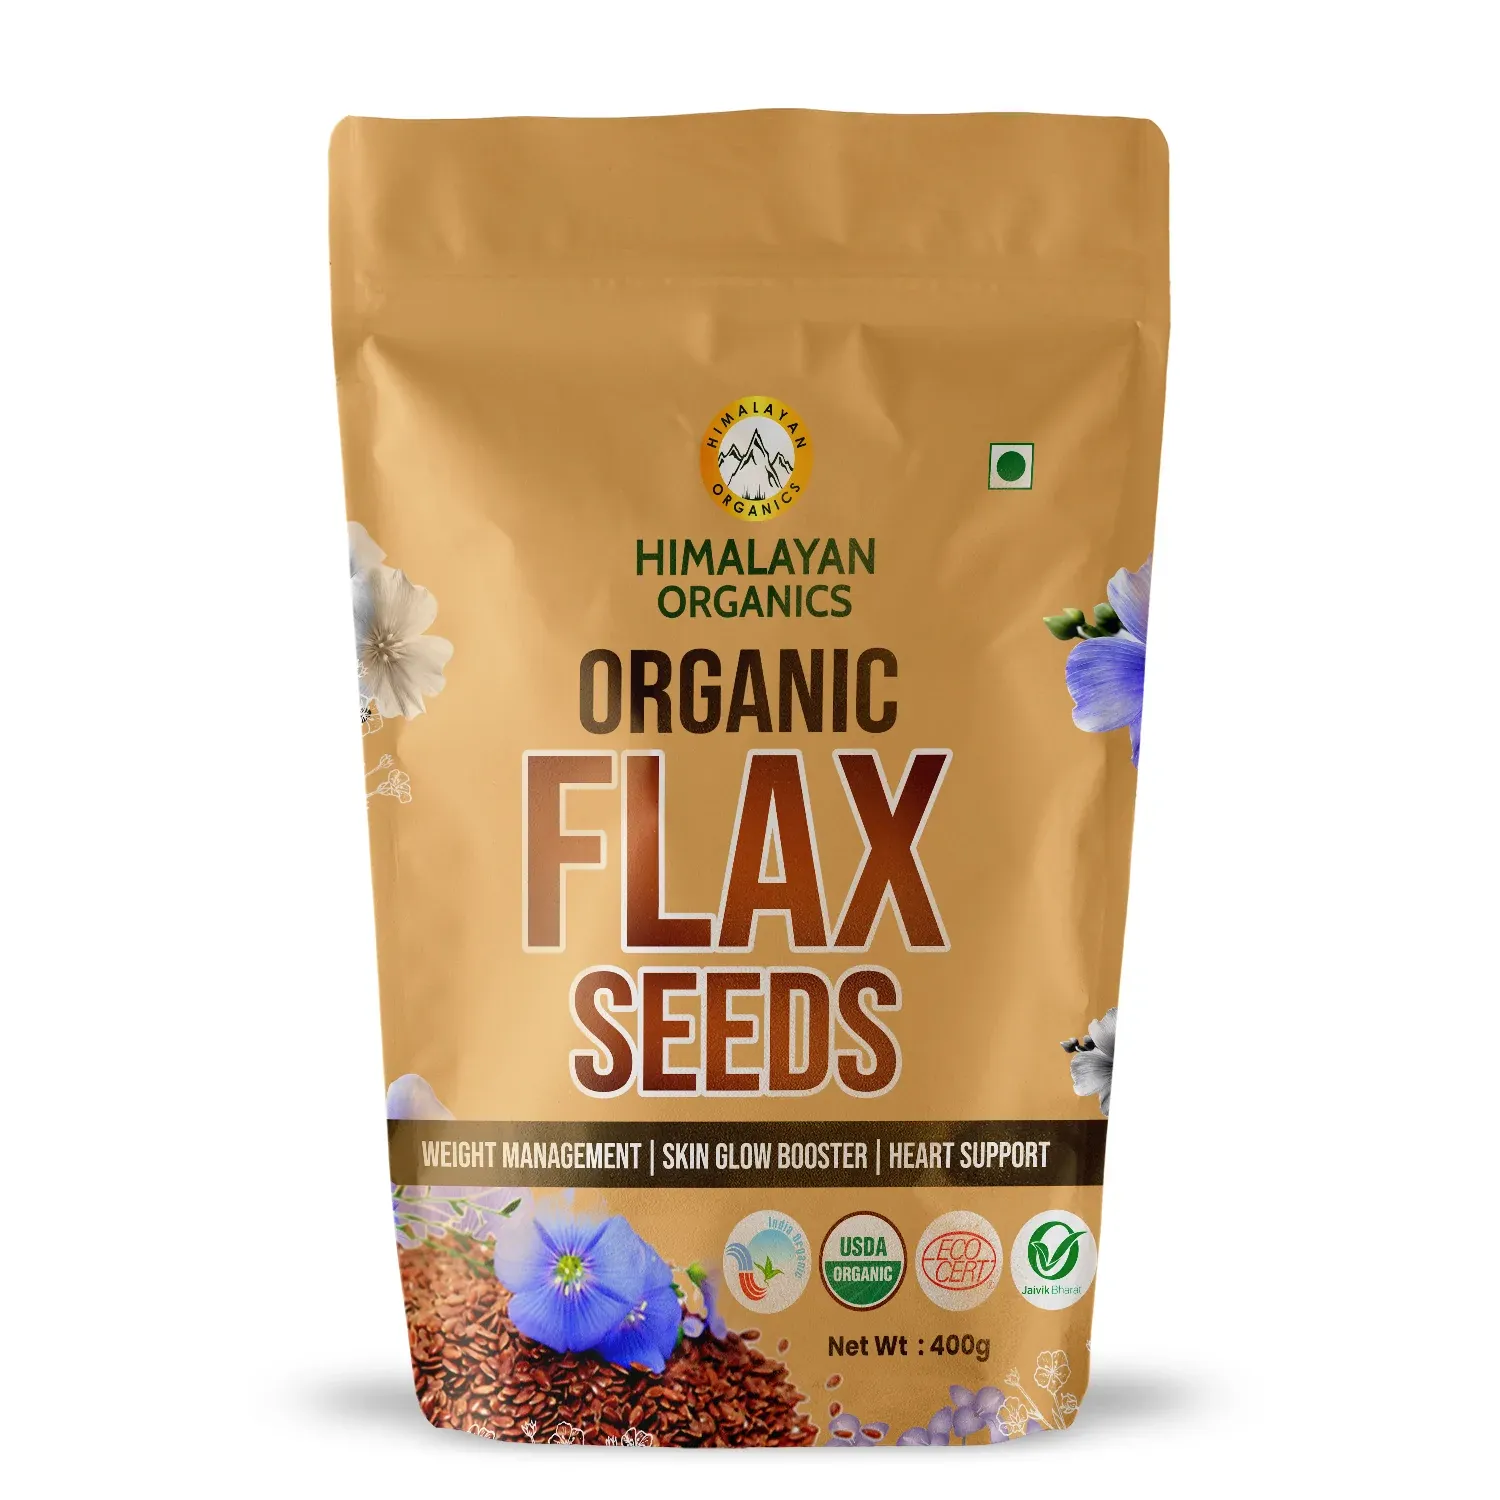 Himalayan Organics Flax Seeds Image